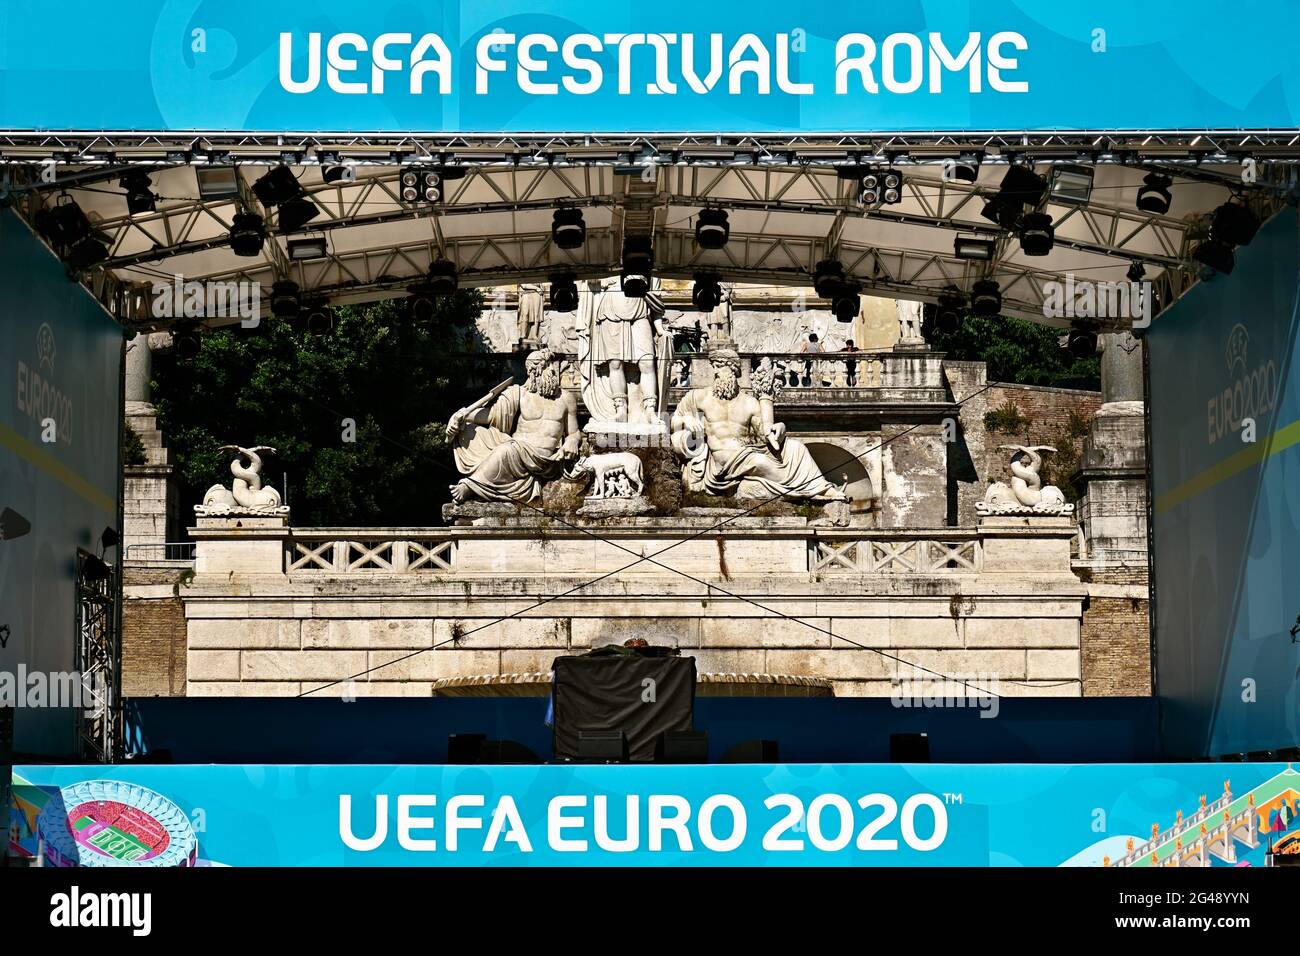 Ligue des champions de l'UEFA Euro 2020, Championnats d'Europe de football. Fan zone football Village sur la place Piazza del Popolo. Rome, Italie, Europe. 2021 Banque D'Images